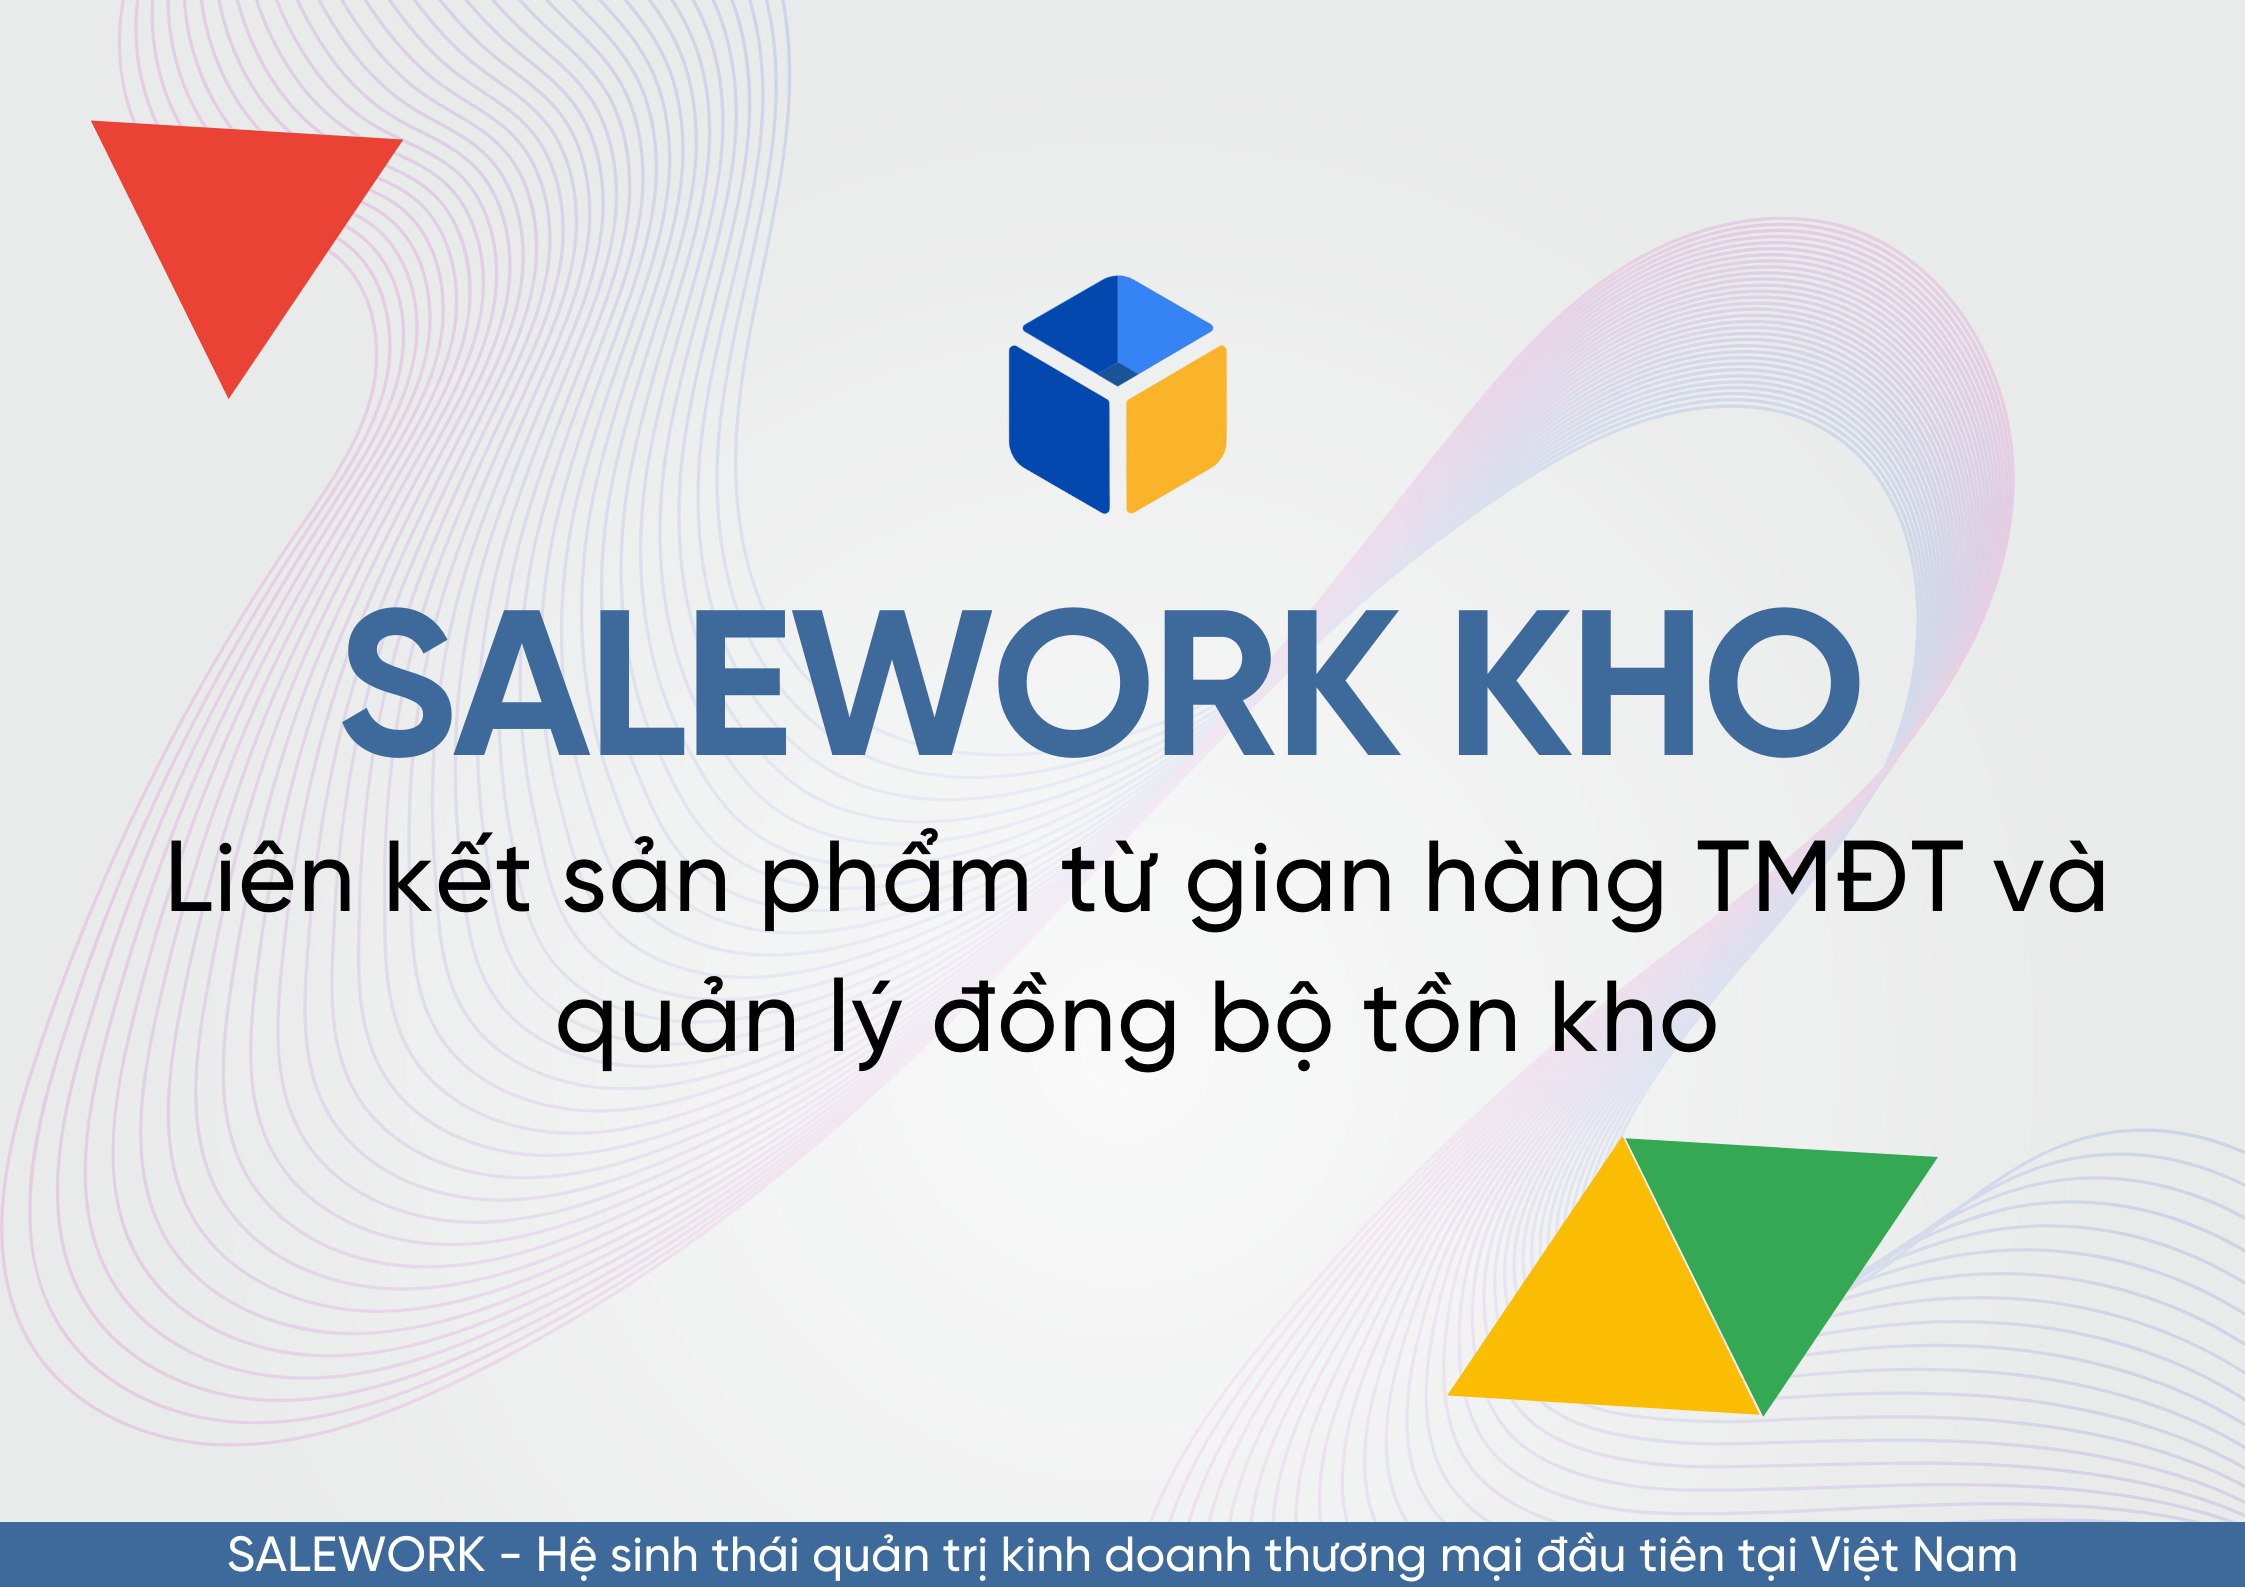 Hướng dẫn liên kết sản phẩm từ gian hàng trên sàn TMĐT về Salework để quản lý đồng bộ tồn kho - 23